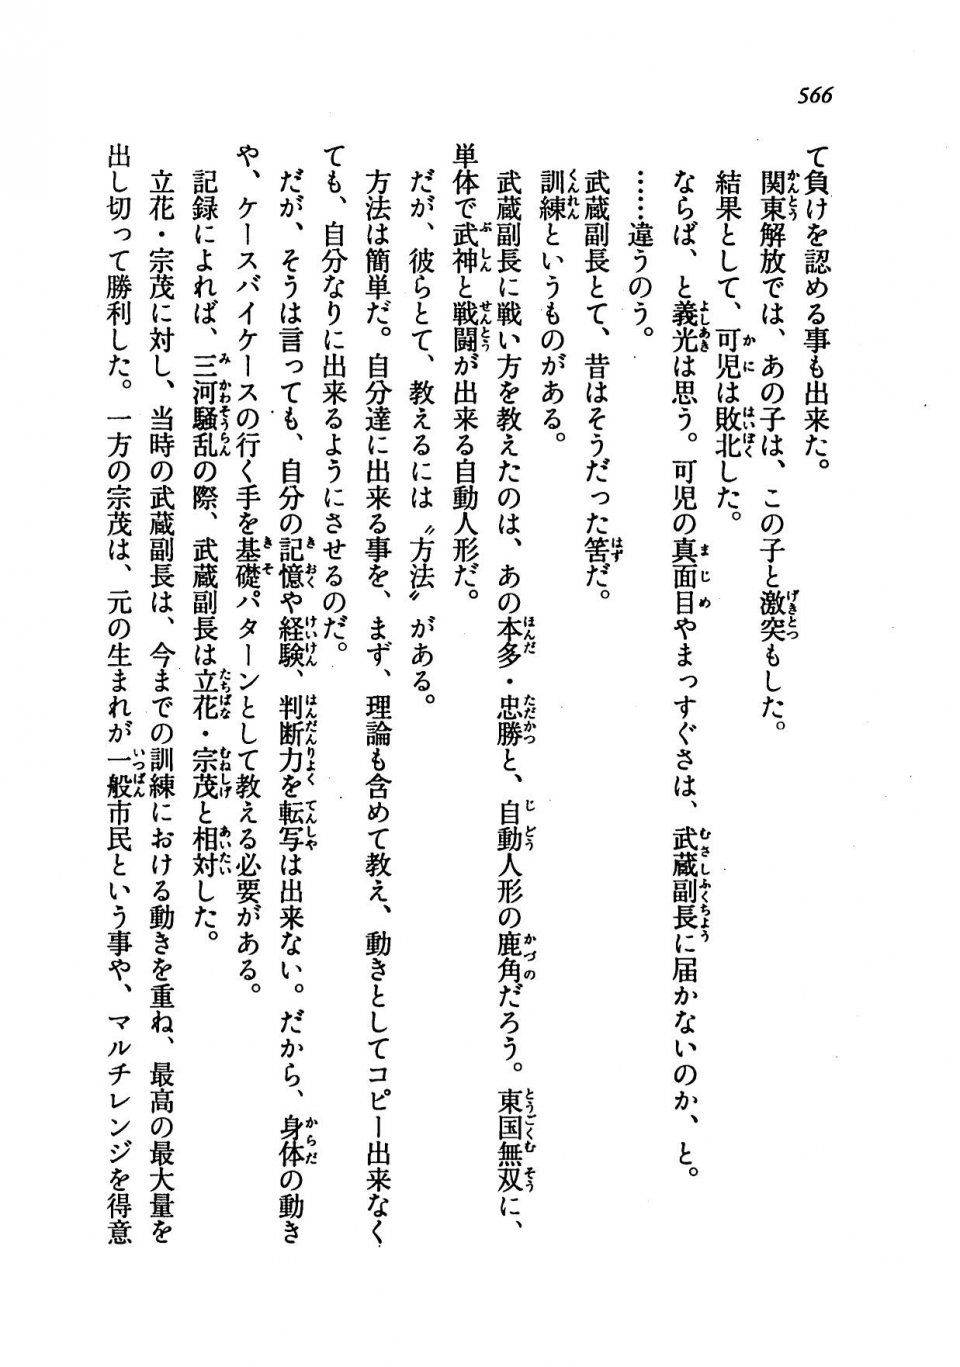 Kyoukai Senjou no Horizon LN Vol 19(8A) - Photo #566